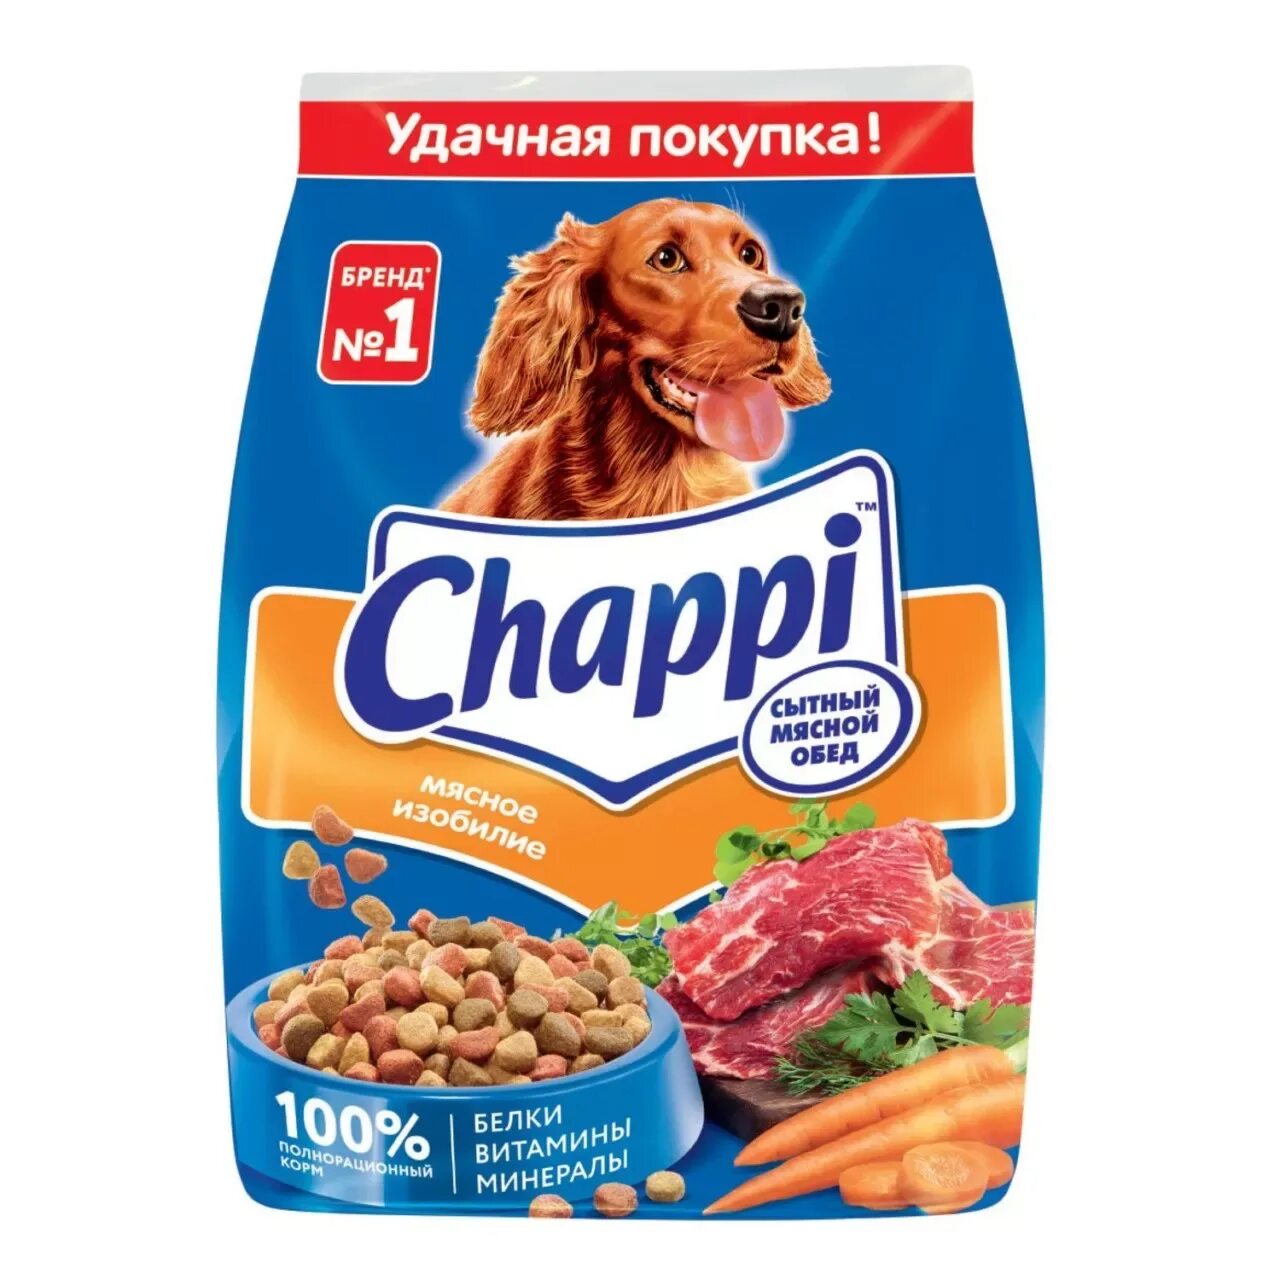 Корм для собак chappi. Корм для собак Chappi сытный мясной обед мясное изобилие 600г. Chappi мясное изобилие (600 г). Сухой корм для собак Чаппи, 600г,. Корм для собак Чаппи 600гр.